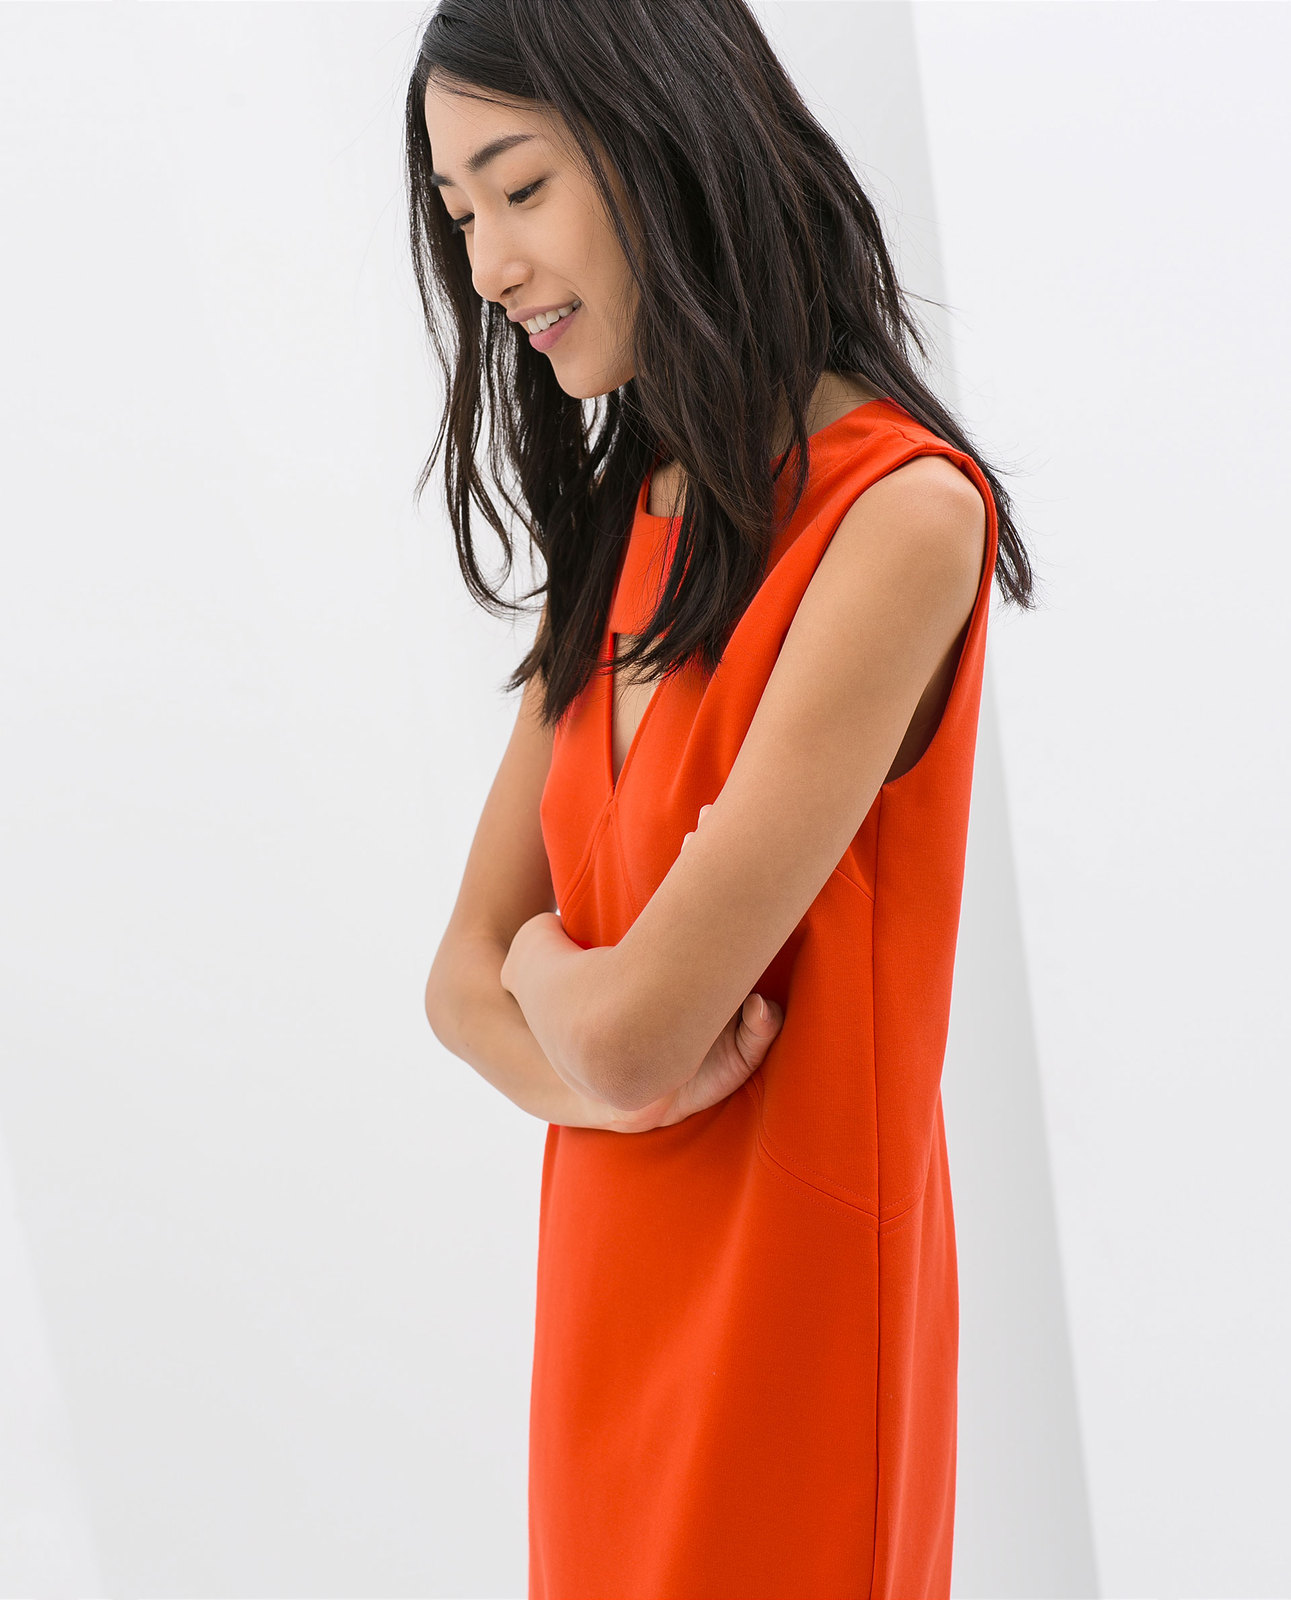 Zara hátul kivágott narancs ruha 2014.4.15 #56188 fotója